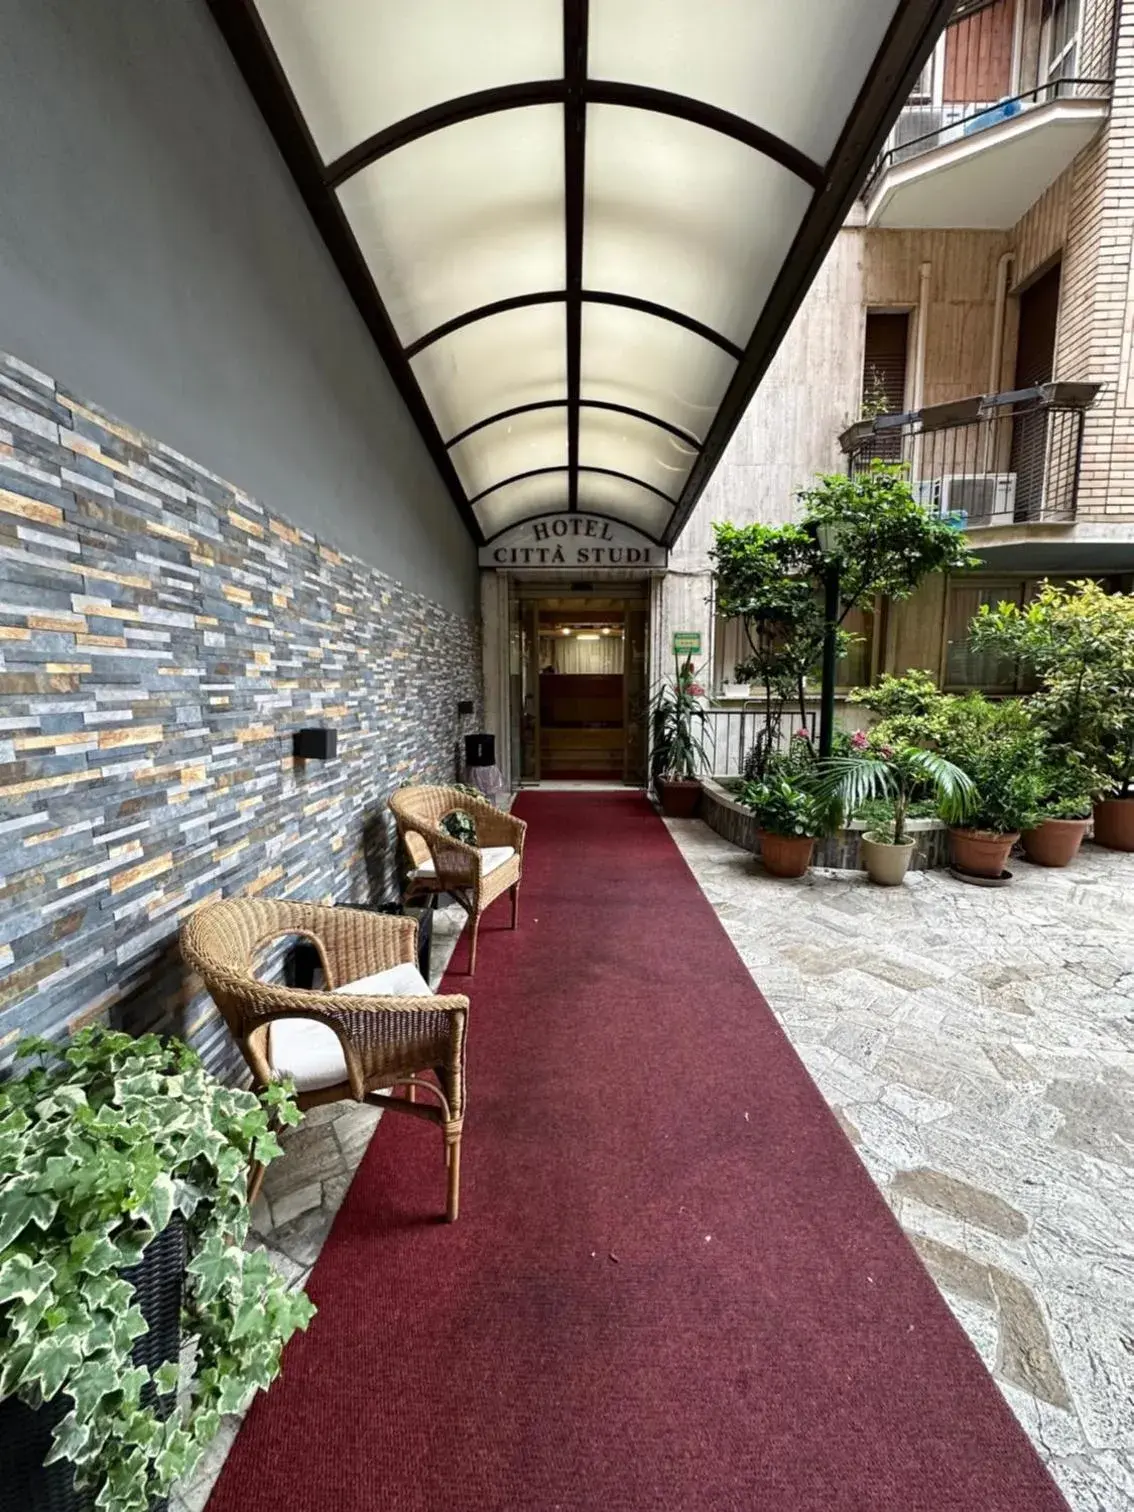 Property building in Hotel Città Studi